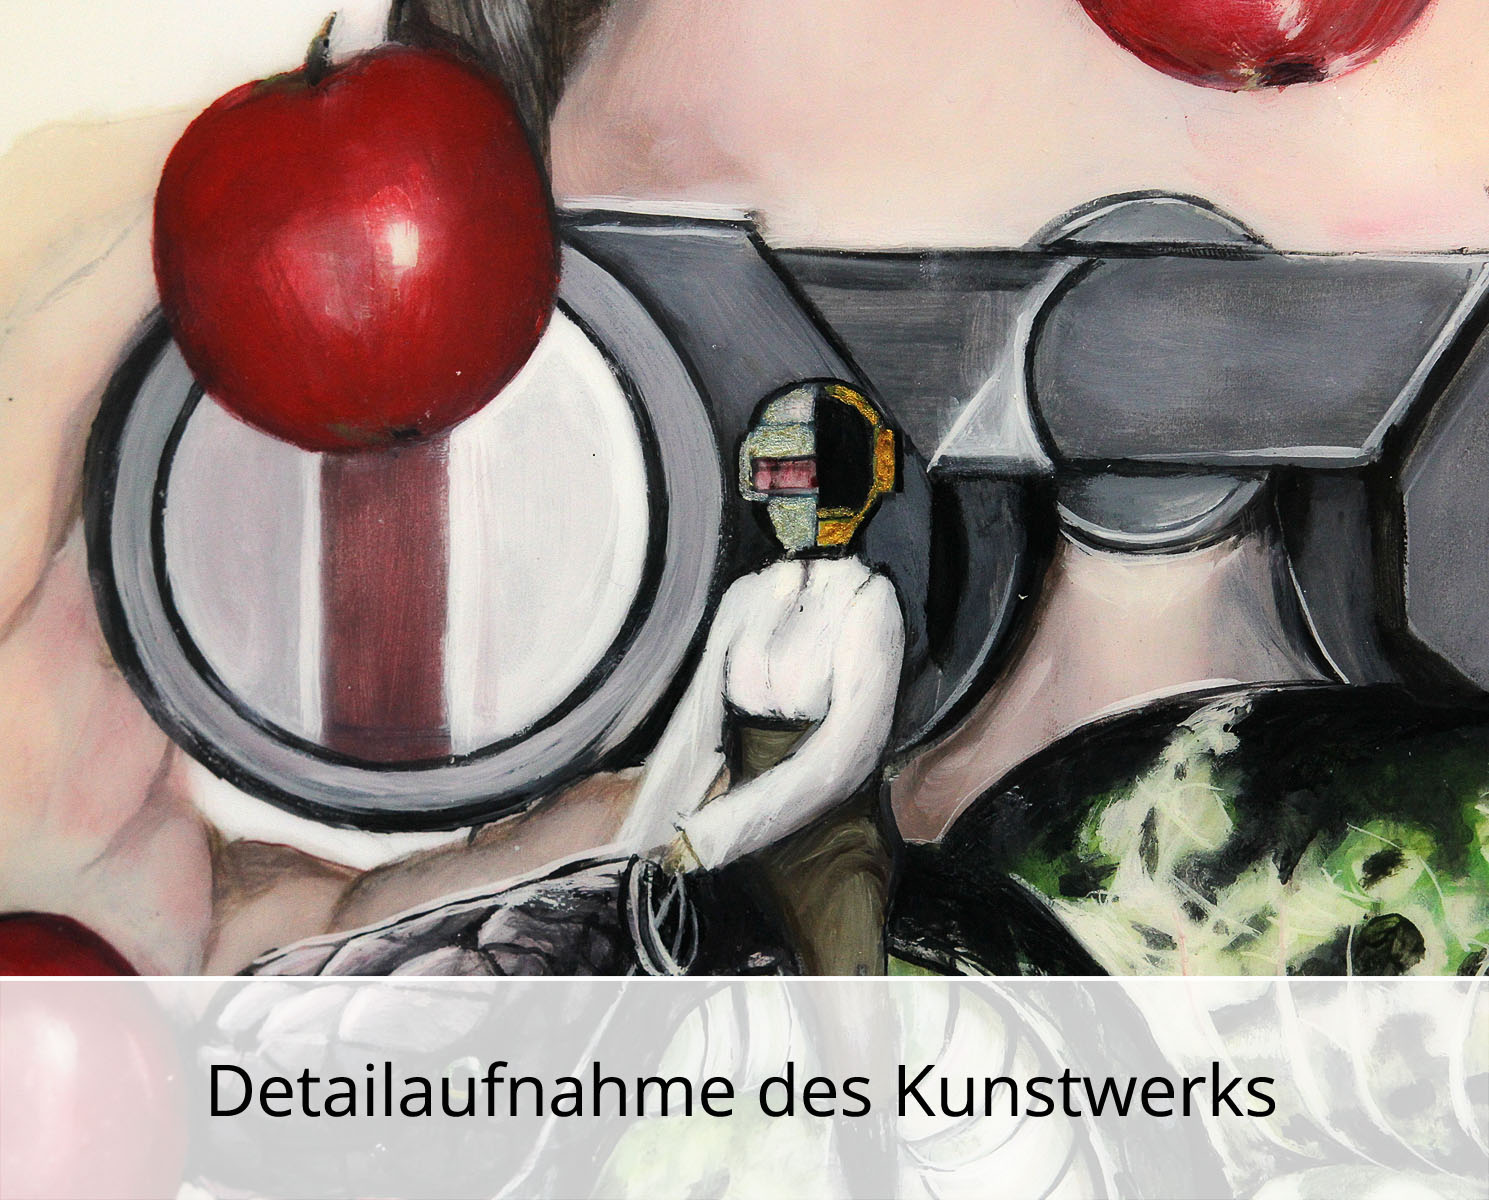 D. Block: "Und täglich fliesst aus Äpfeln Saft", Original/Unikat, expressive Ölmalerei